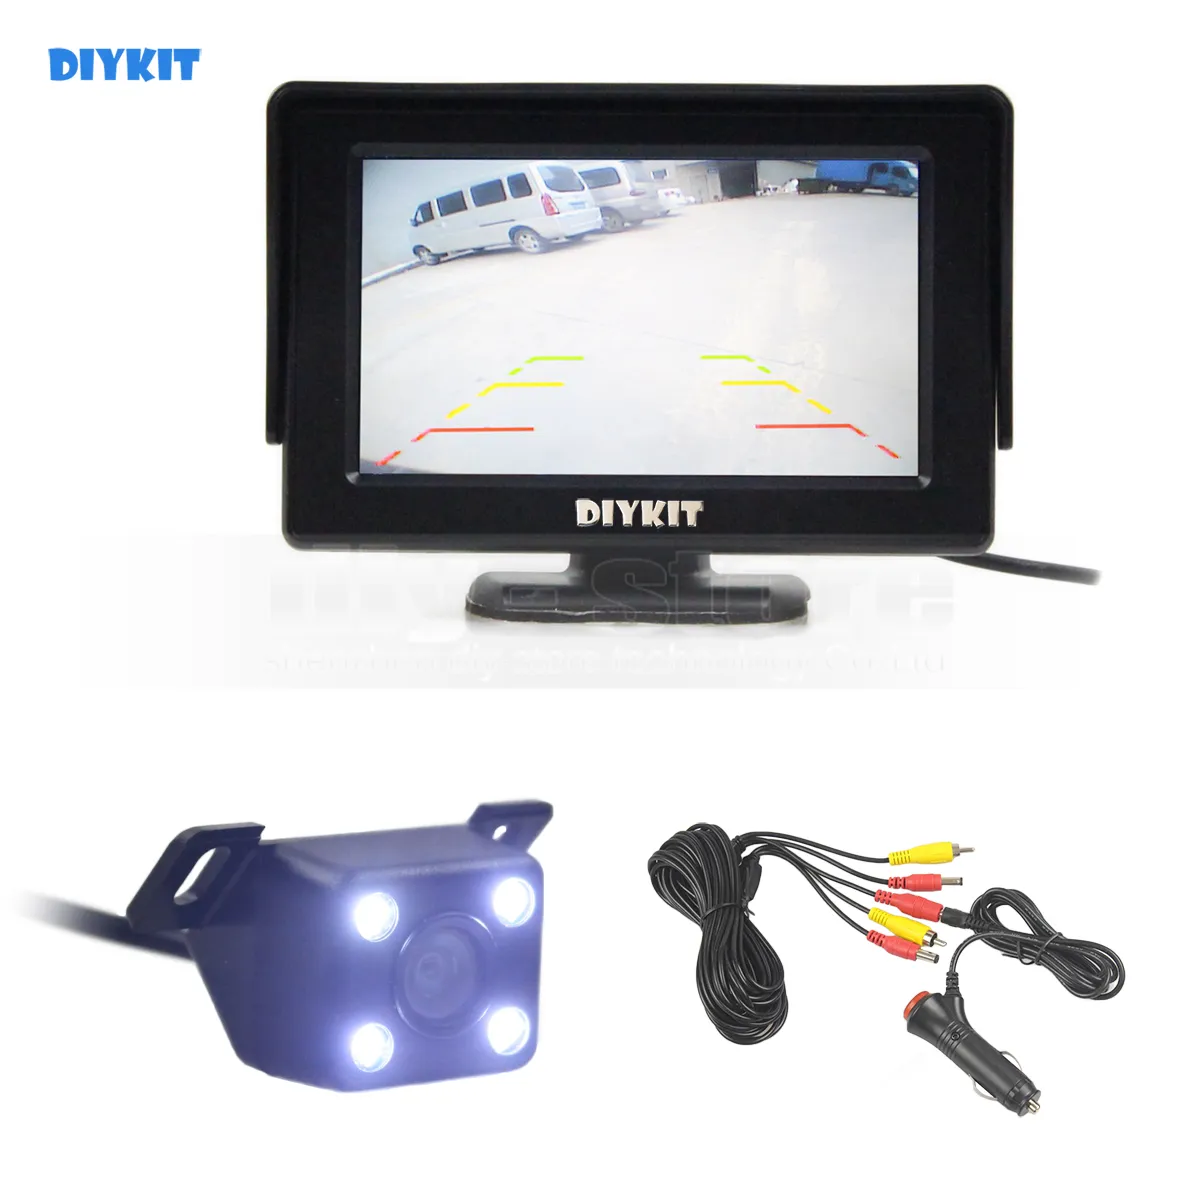 DIYKIT Wlred 4.3 인치 TFT LCD 자동차 모니터 + LED 나이트 비전 후면보기 자동차 카메라 주차 지원 시스템 기